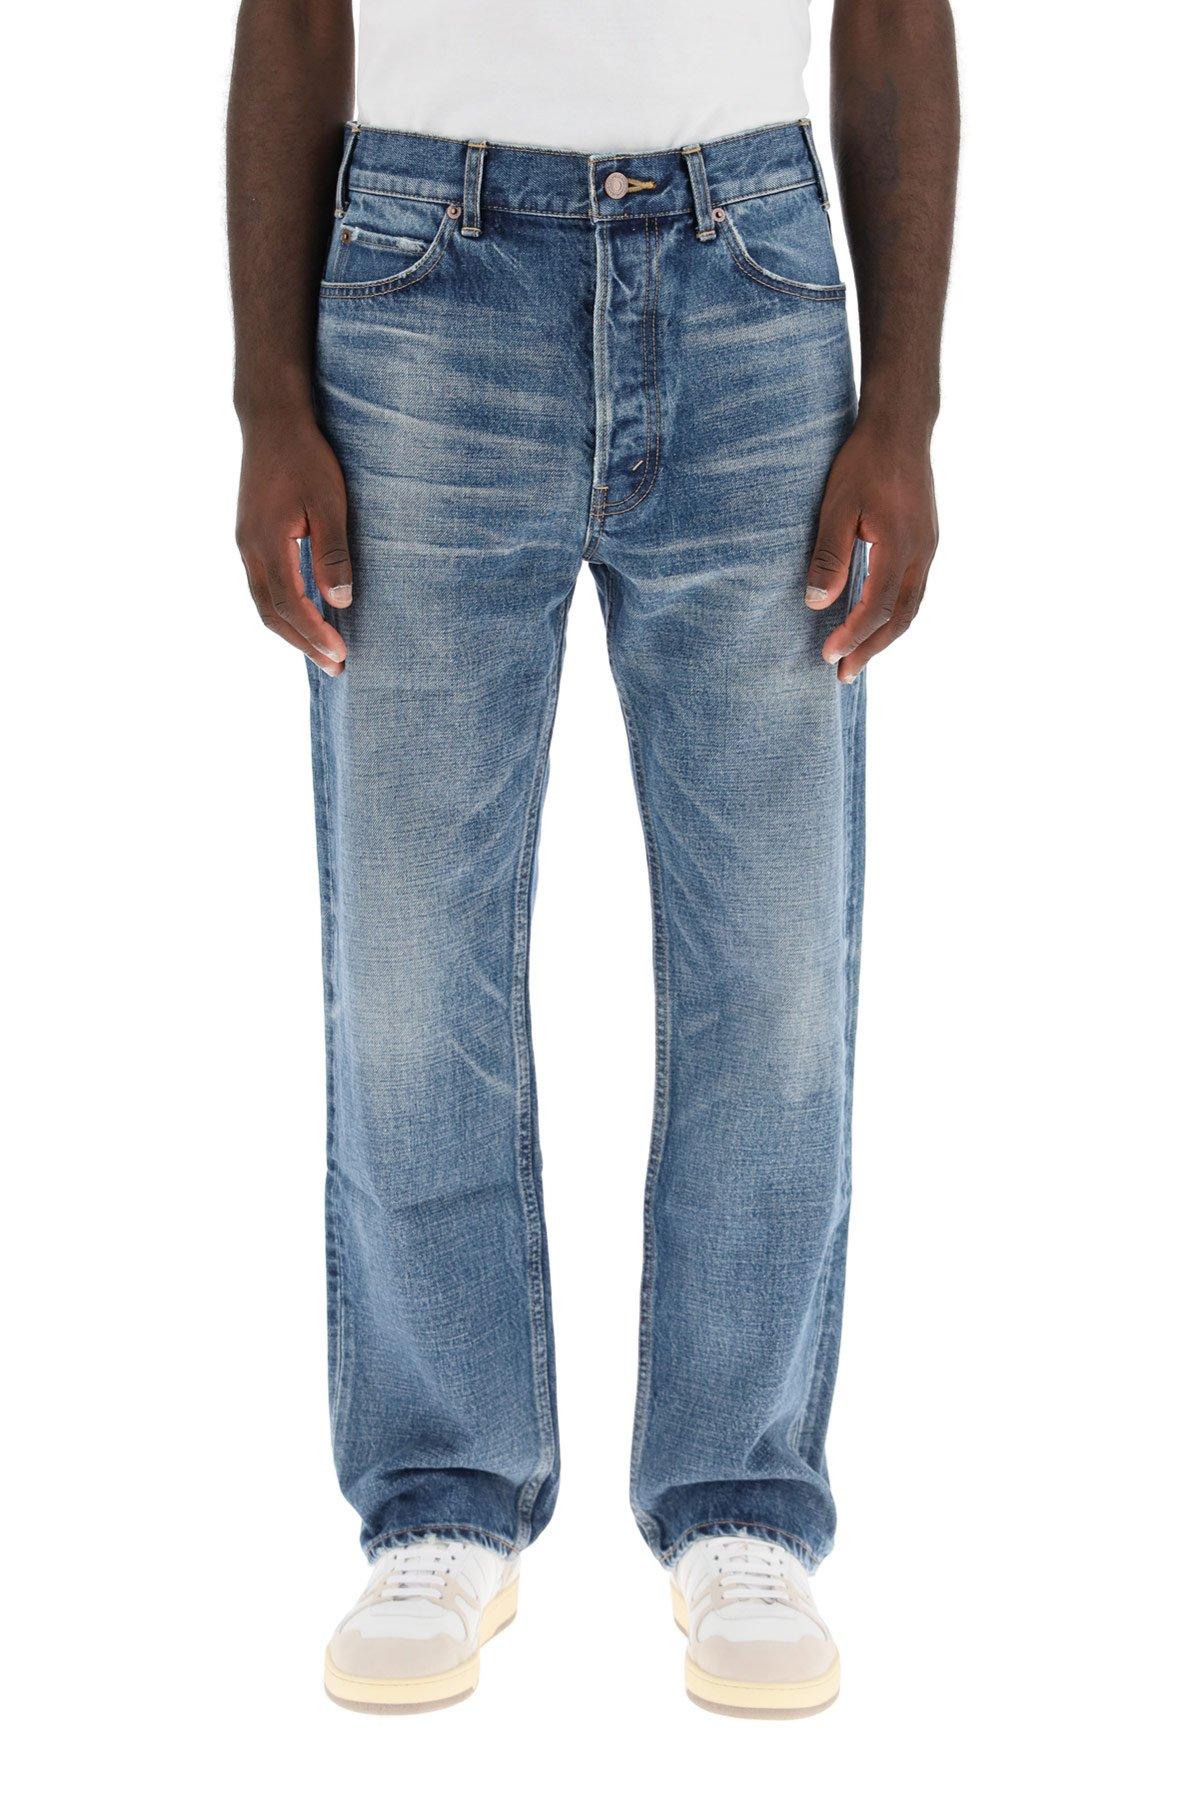 Celine Denim Regular Jeans in Blue for Men - Lyst